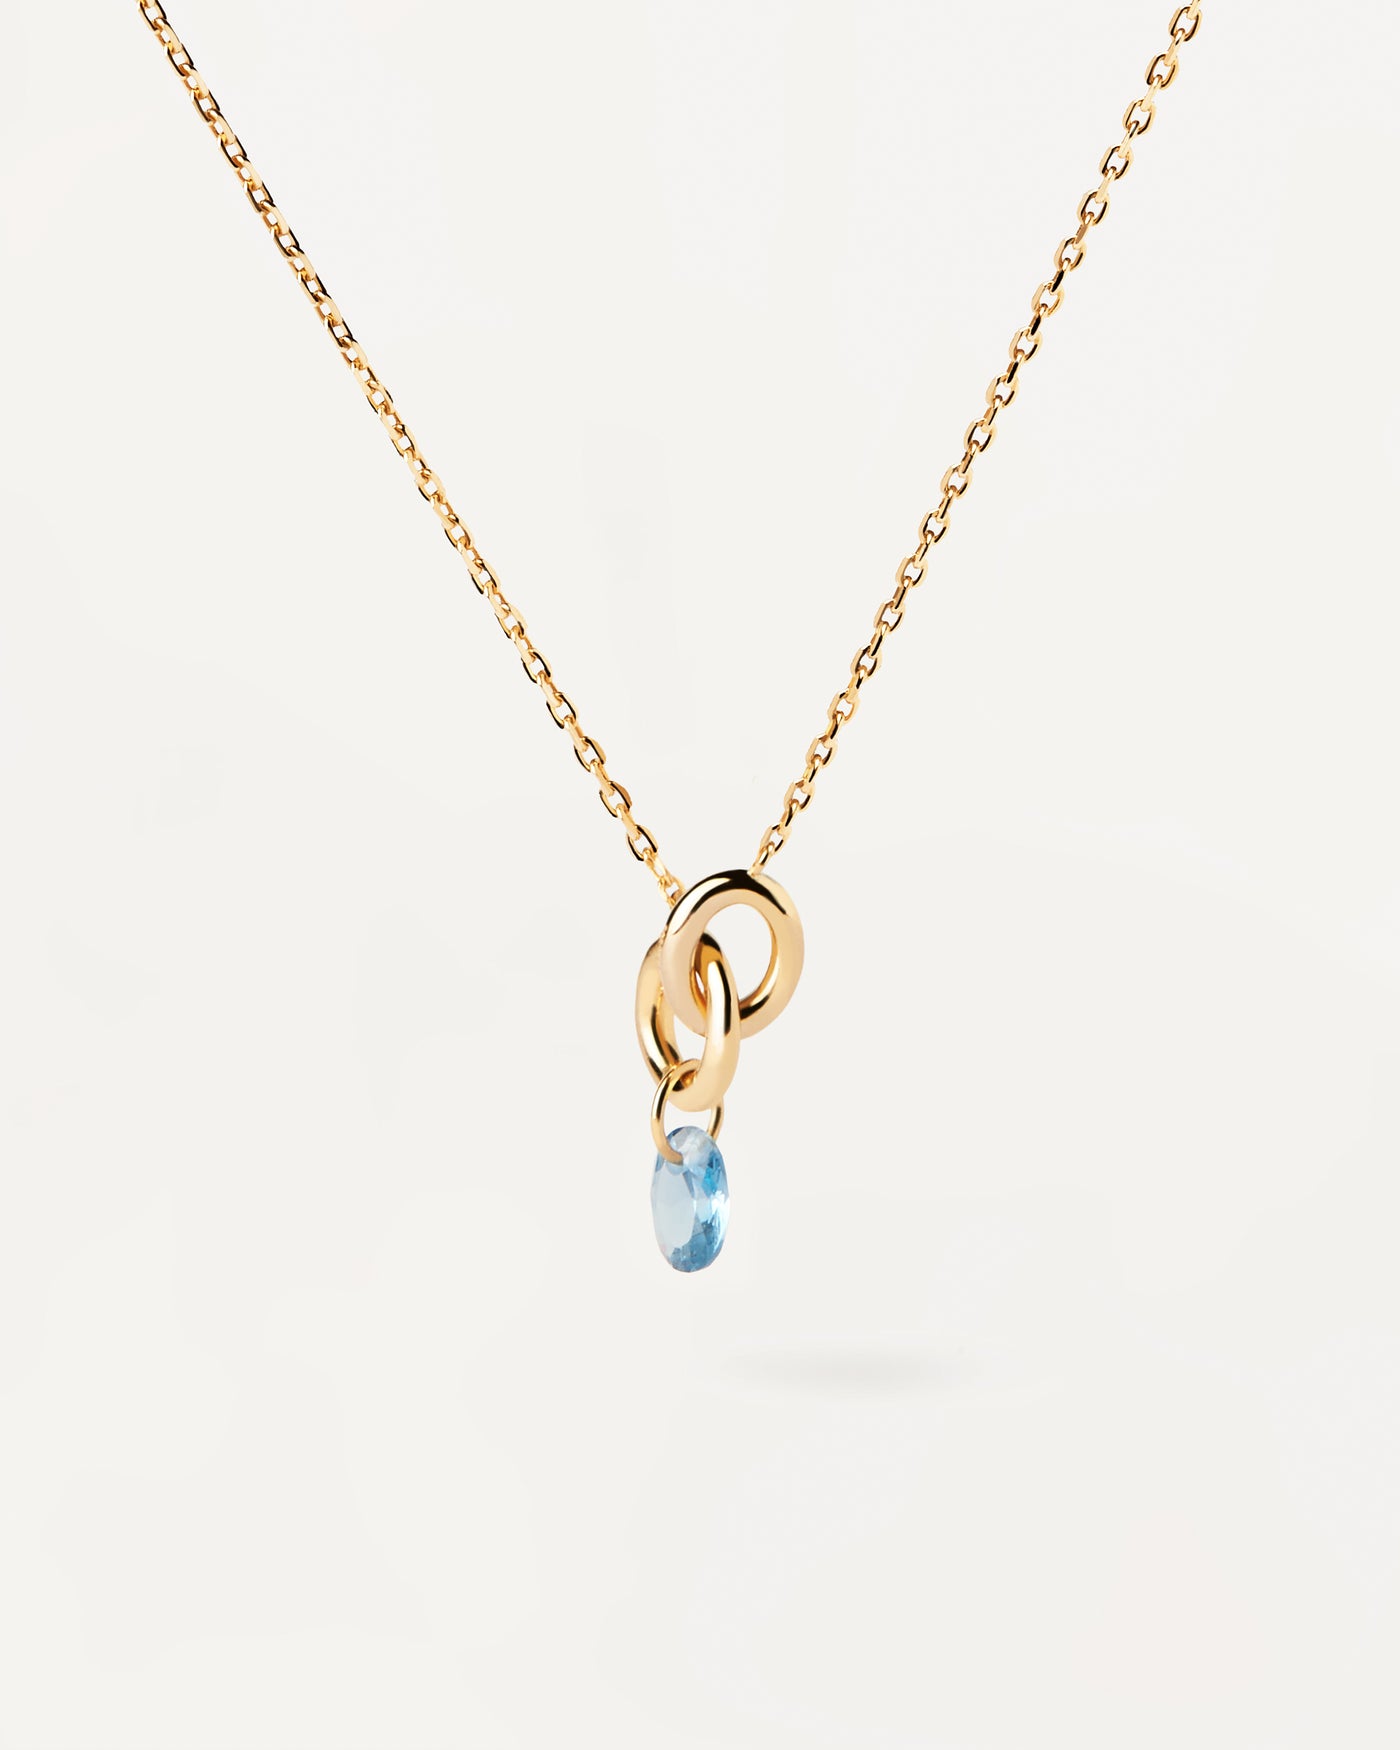 Collier Lily bleu. Collier composé de deux anneaux entrelacés avec zircon bleu pendentif en forme de goutte. Découvrez les dernières nouveautés de chez PDPAOLA. Commandez et recevez votre bijou en toute sérénité.